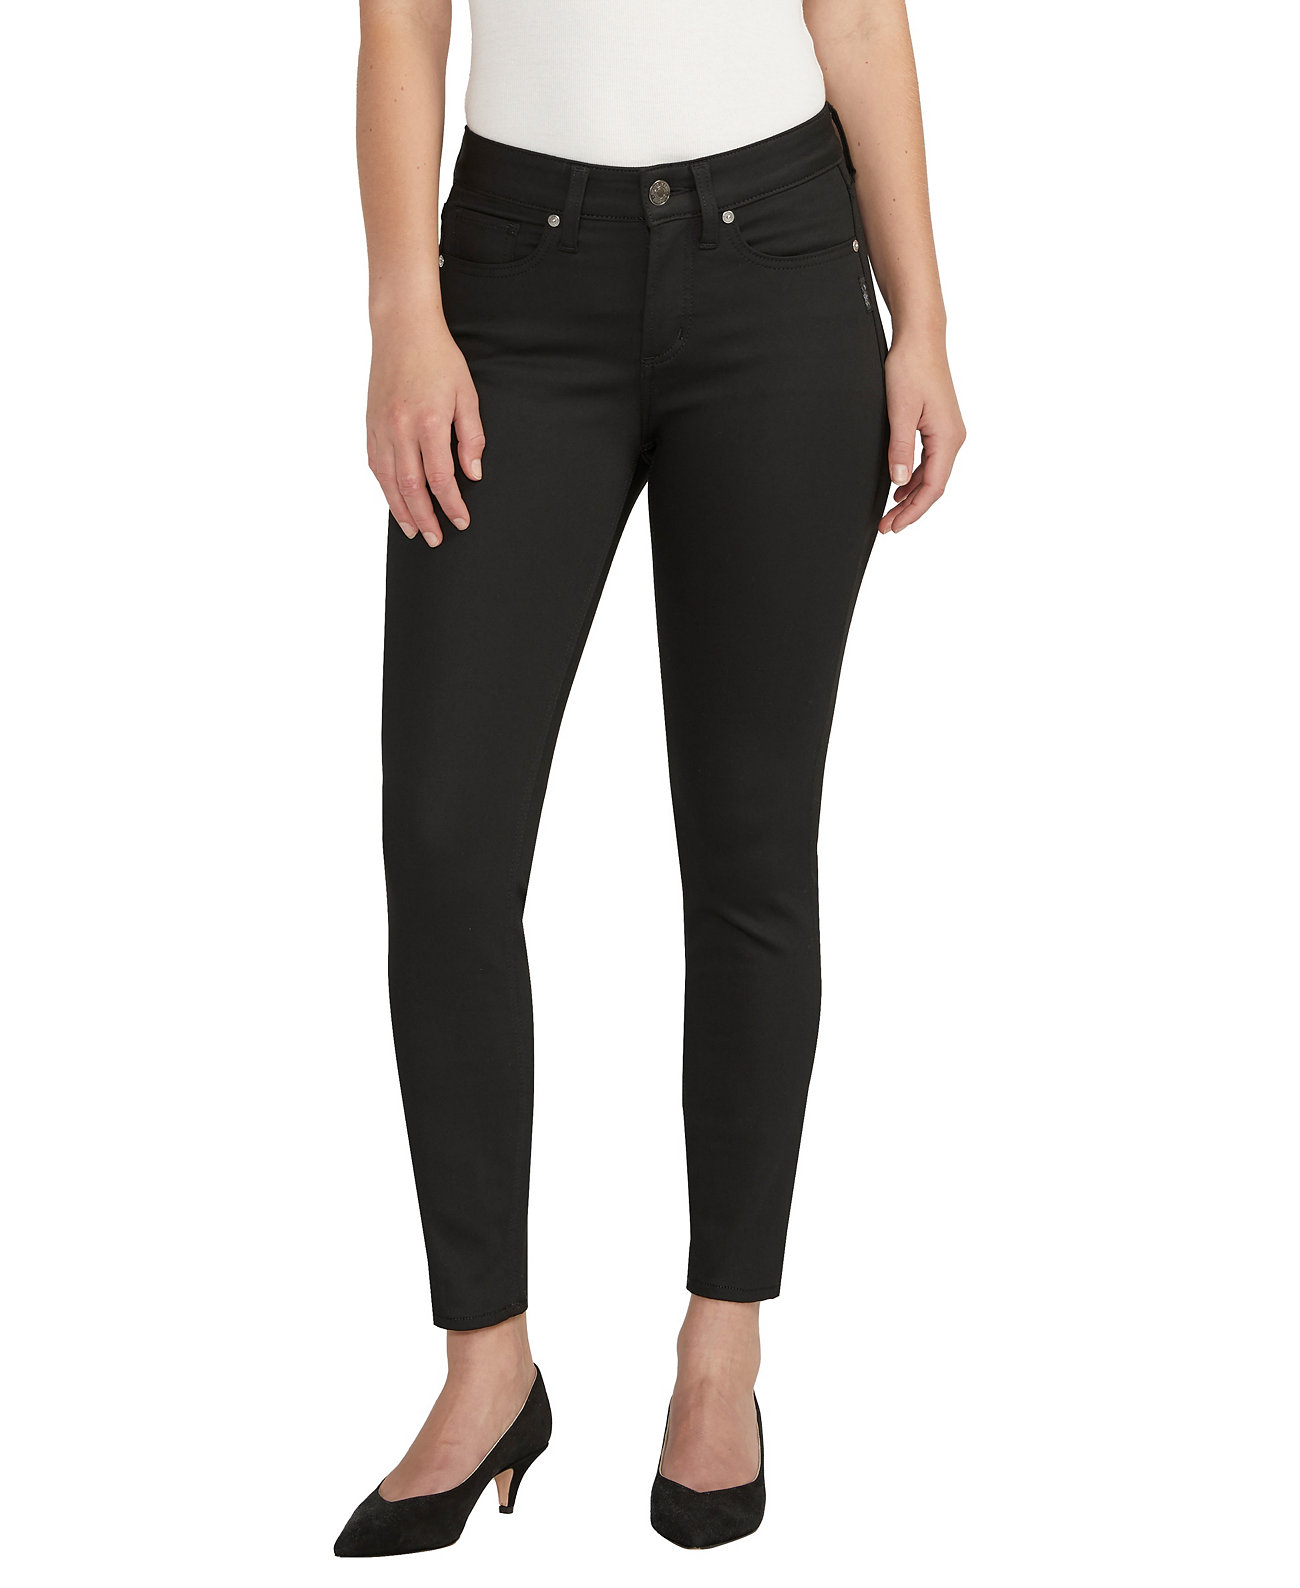 Женские джинсы скинни Suki со средней посадкой и пышным кроем до щиколотки Silver Jeans Co.